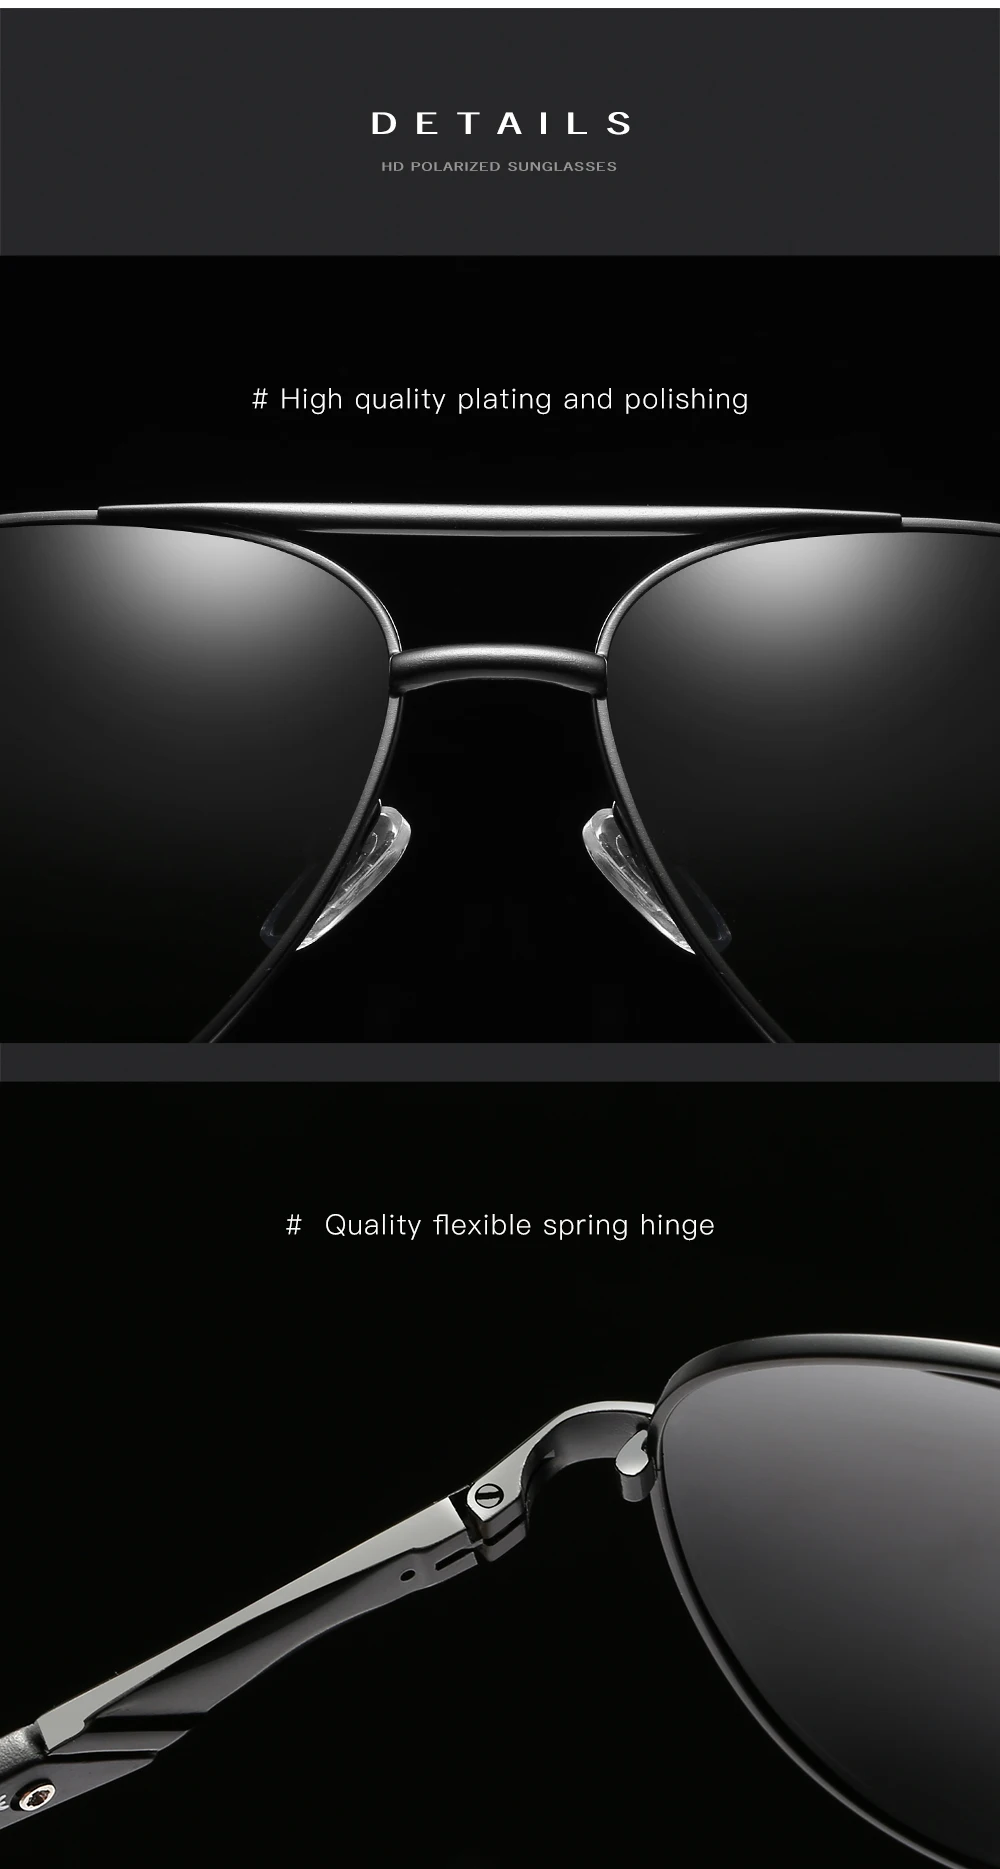 Классические поляроидные солнцезащитные очки Для мужчин Брендовая Дизайнерская обувь оттенки пилот вождения солнцезащитные очки, зеркальные авиационные защитные очки UV400 Oculos De Sol masculino